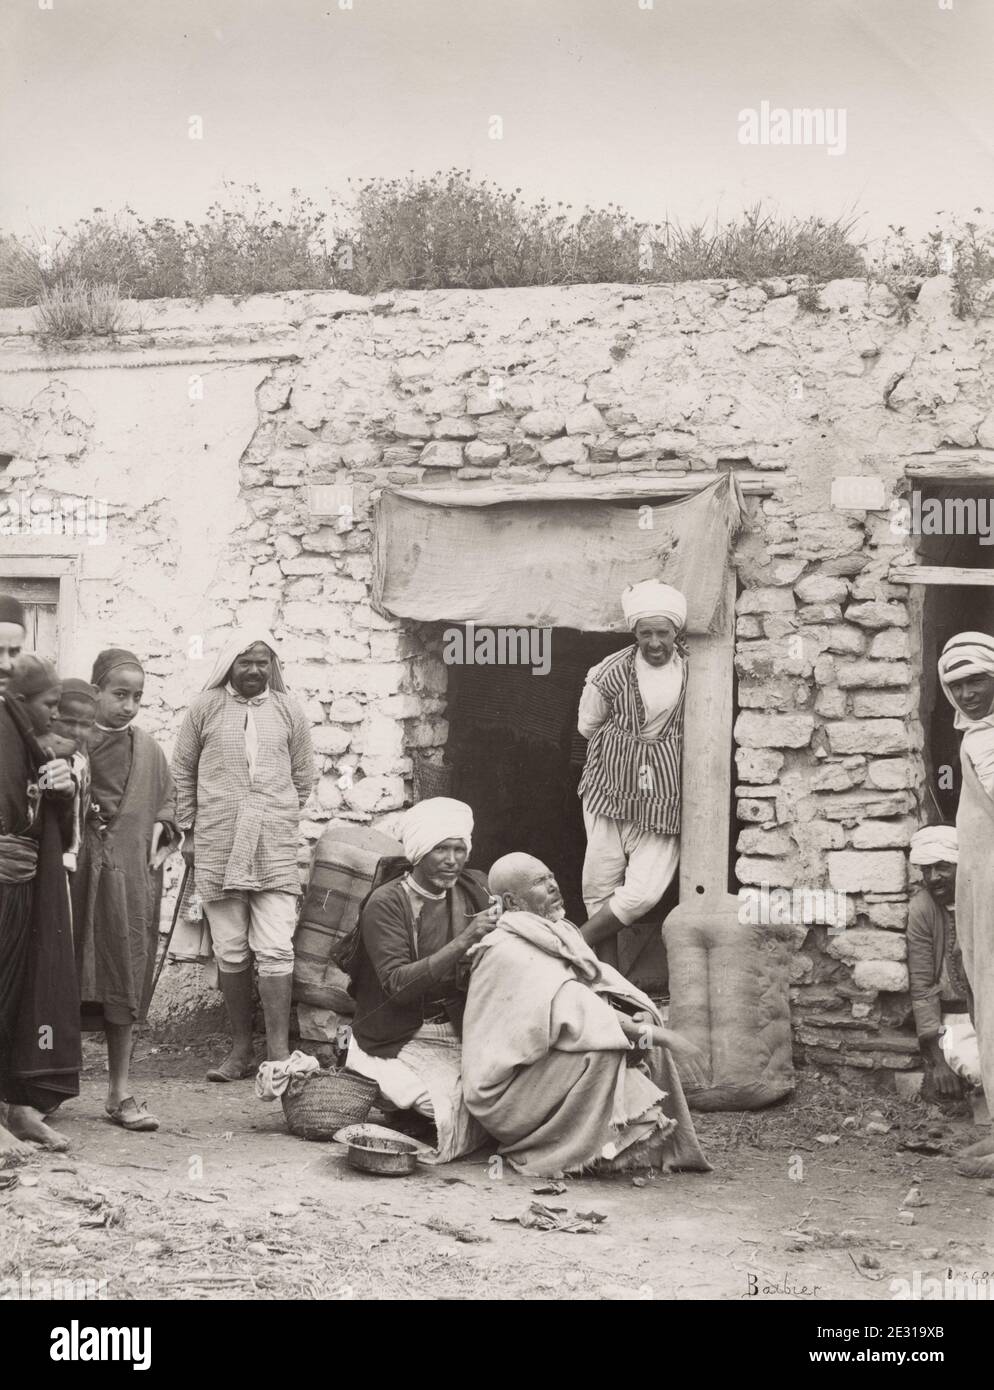 Photographie vintage du XIXe siècle: street barber Afrique du Nord, probablement Tunisie ou Algérie Banque D'Images